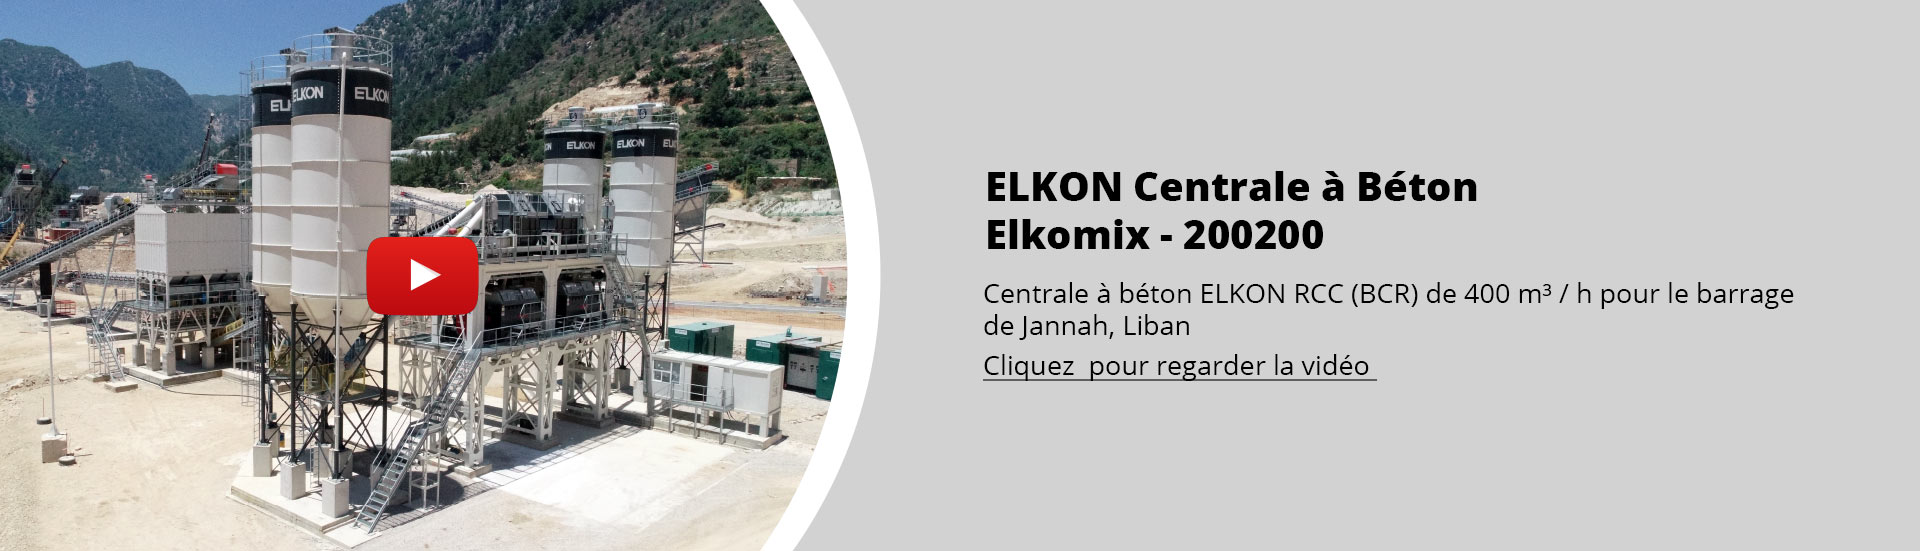 ELKON Centrale à Béton Elkomix - 200200